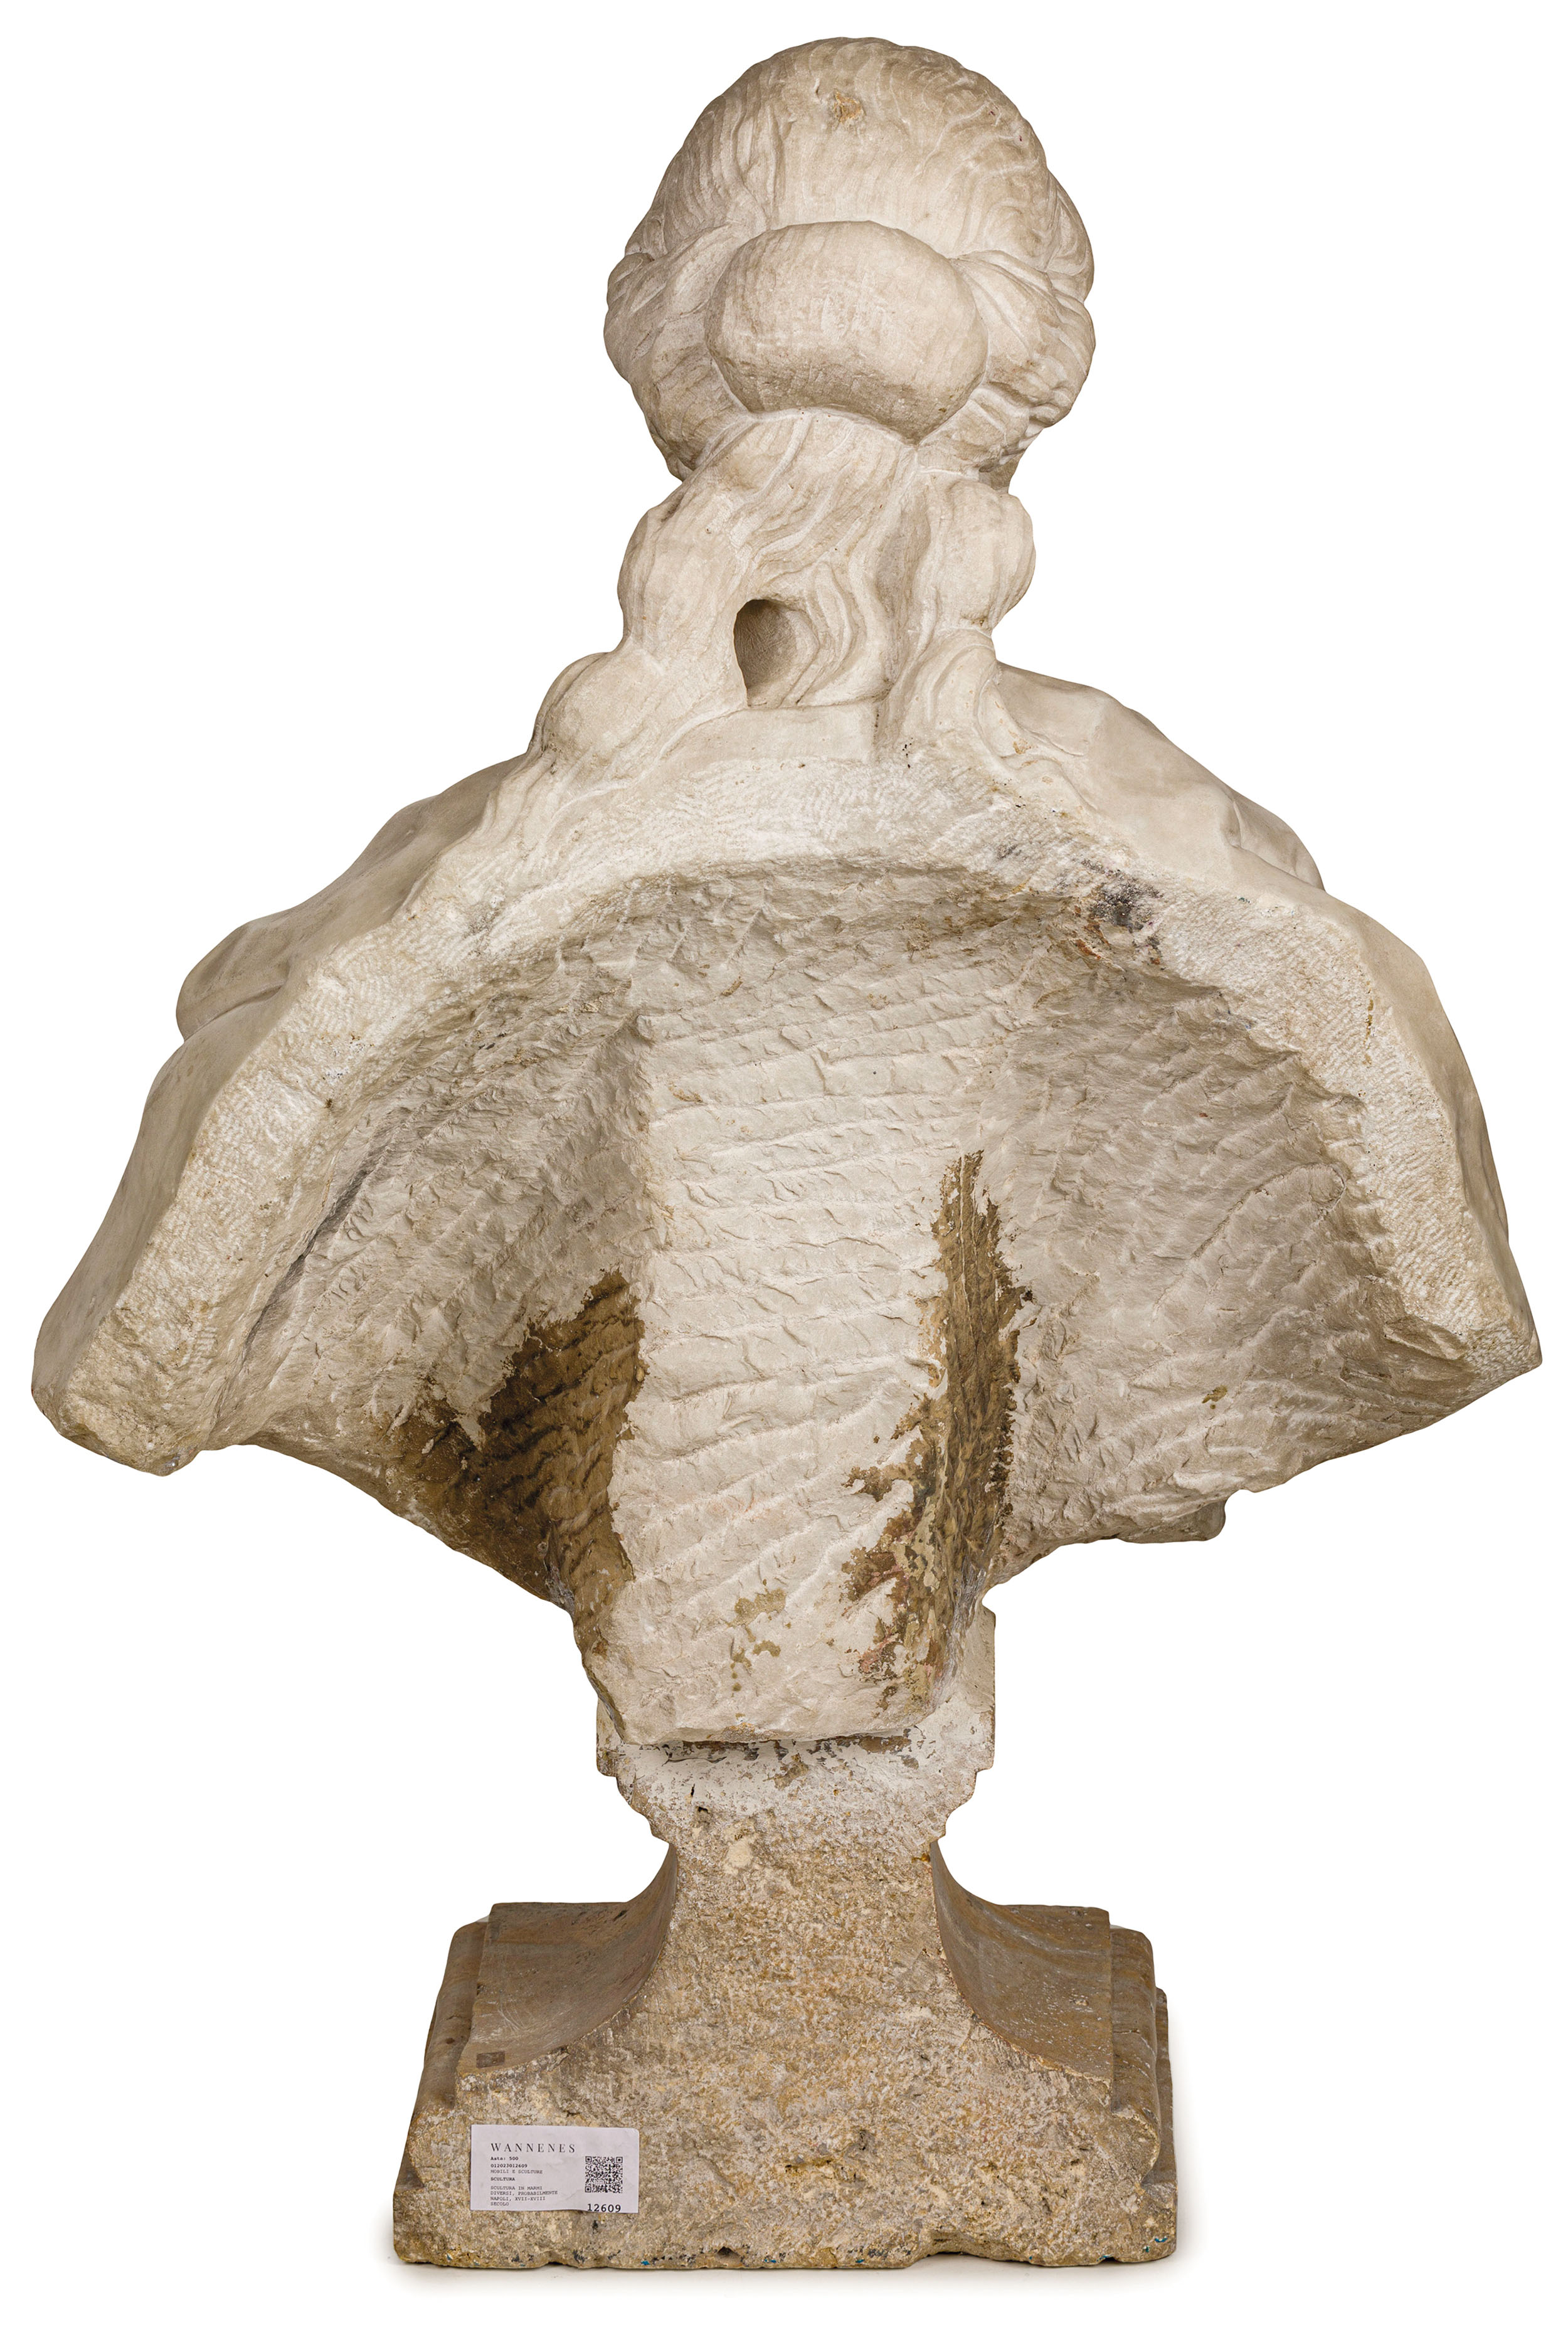 SCULTURA IN MARMO, PROBABILMENTE NAPOLI, XVII-XVIII SECOLO - Image 2 of 3